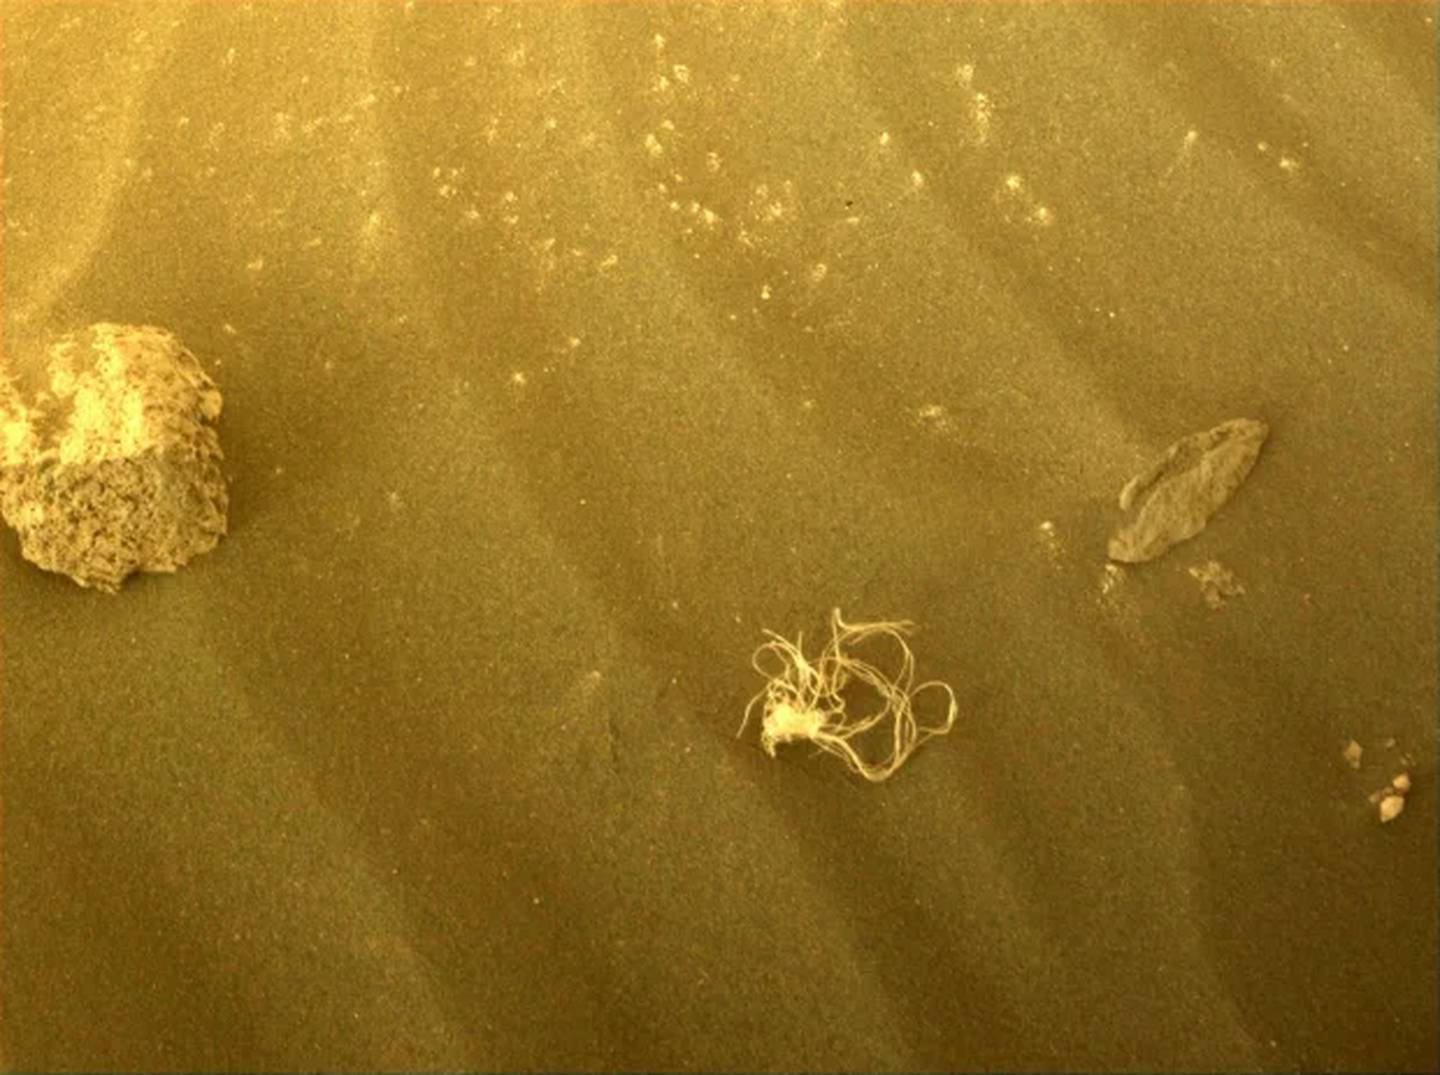 Imagen capturada por el rover Perseverance